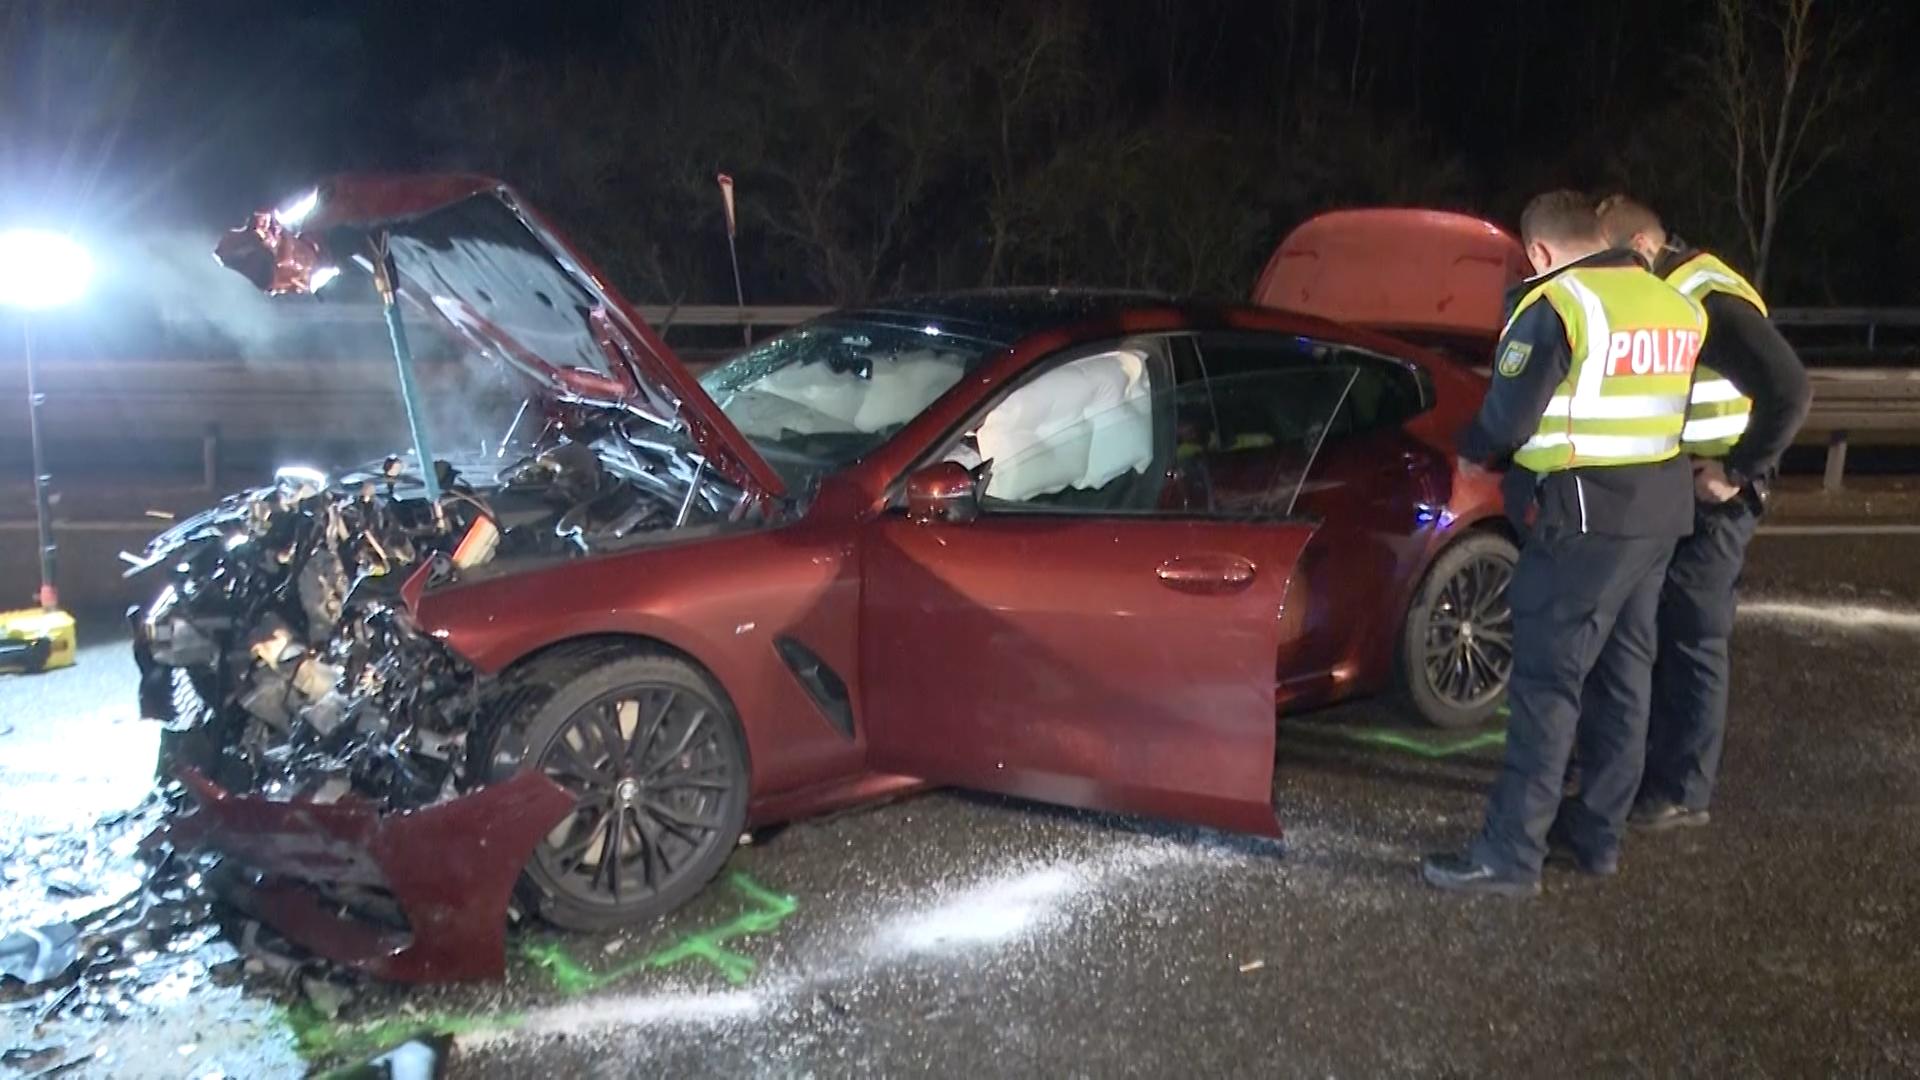 Betrunkener Geisterfahrer kracht mit BMW in Kleinwagen Horror-Unfall auf der A620 bei Saarlouis